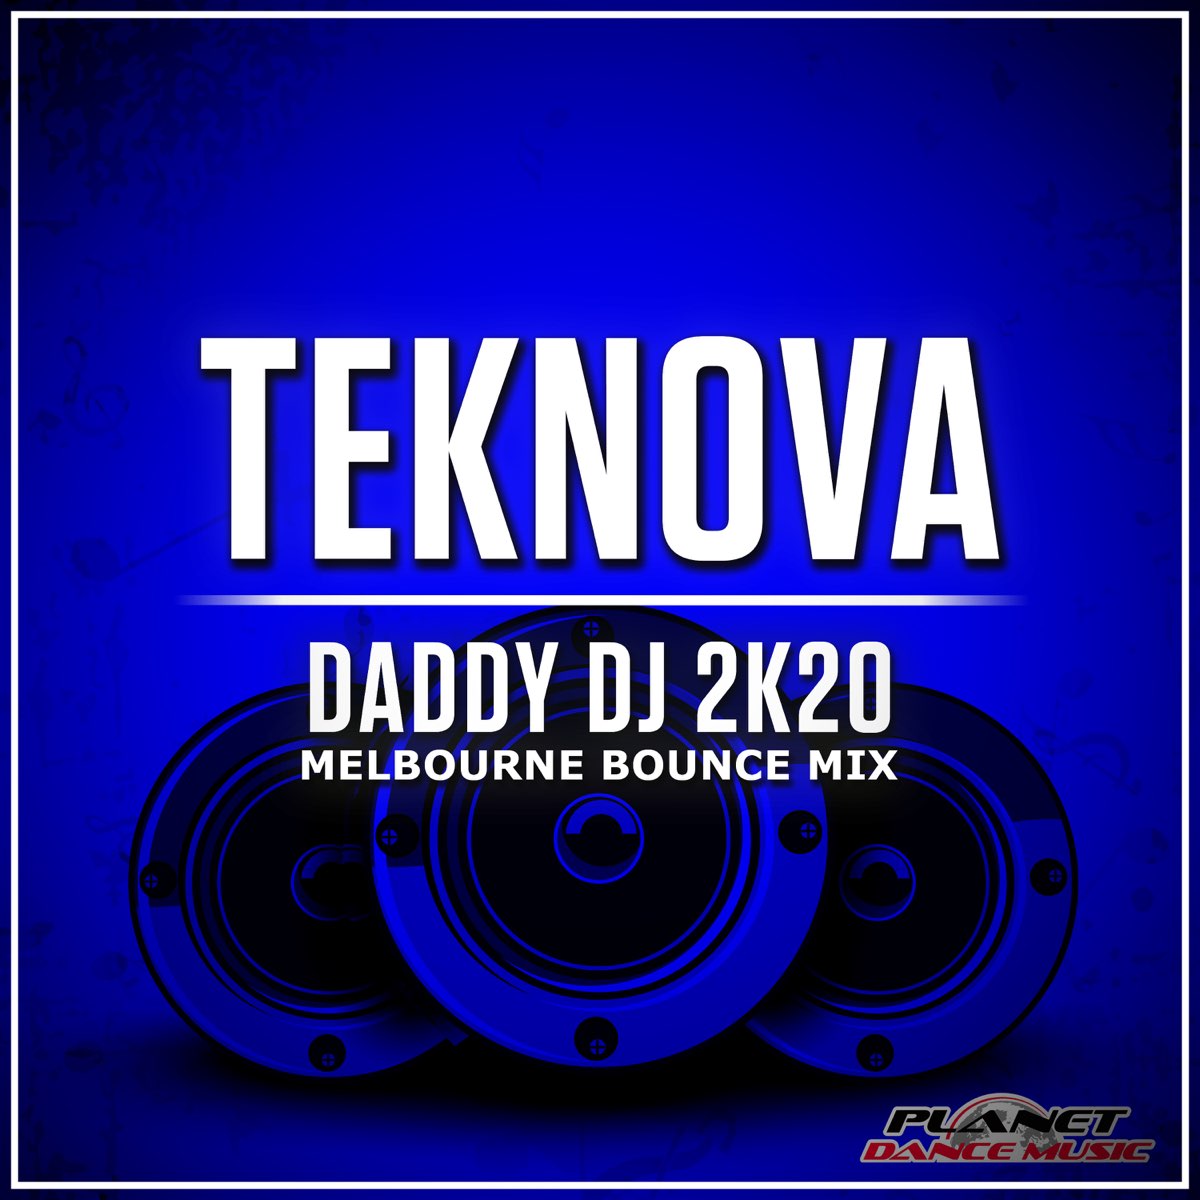 Daddy DJ 2K20 Bounce Mix) Single by Teknova on Apple Music